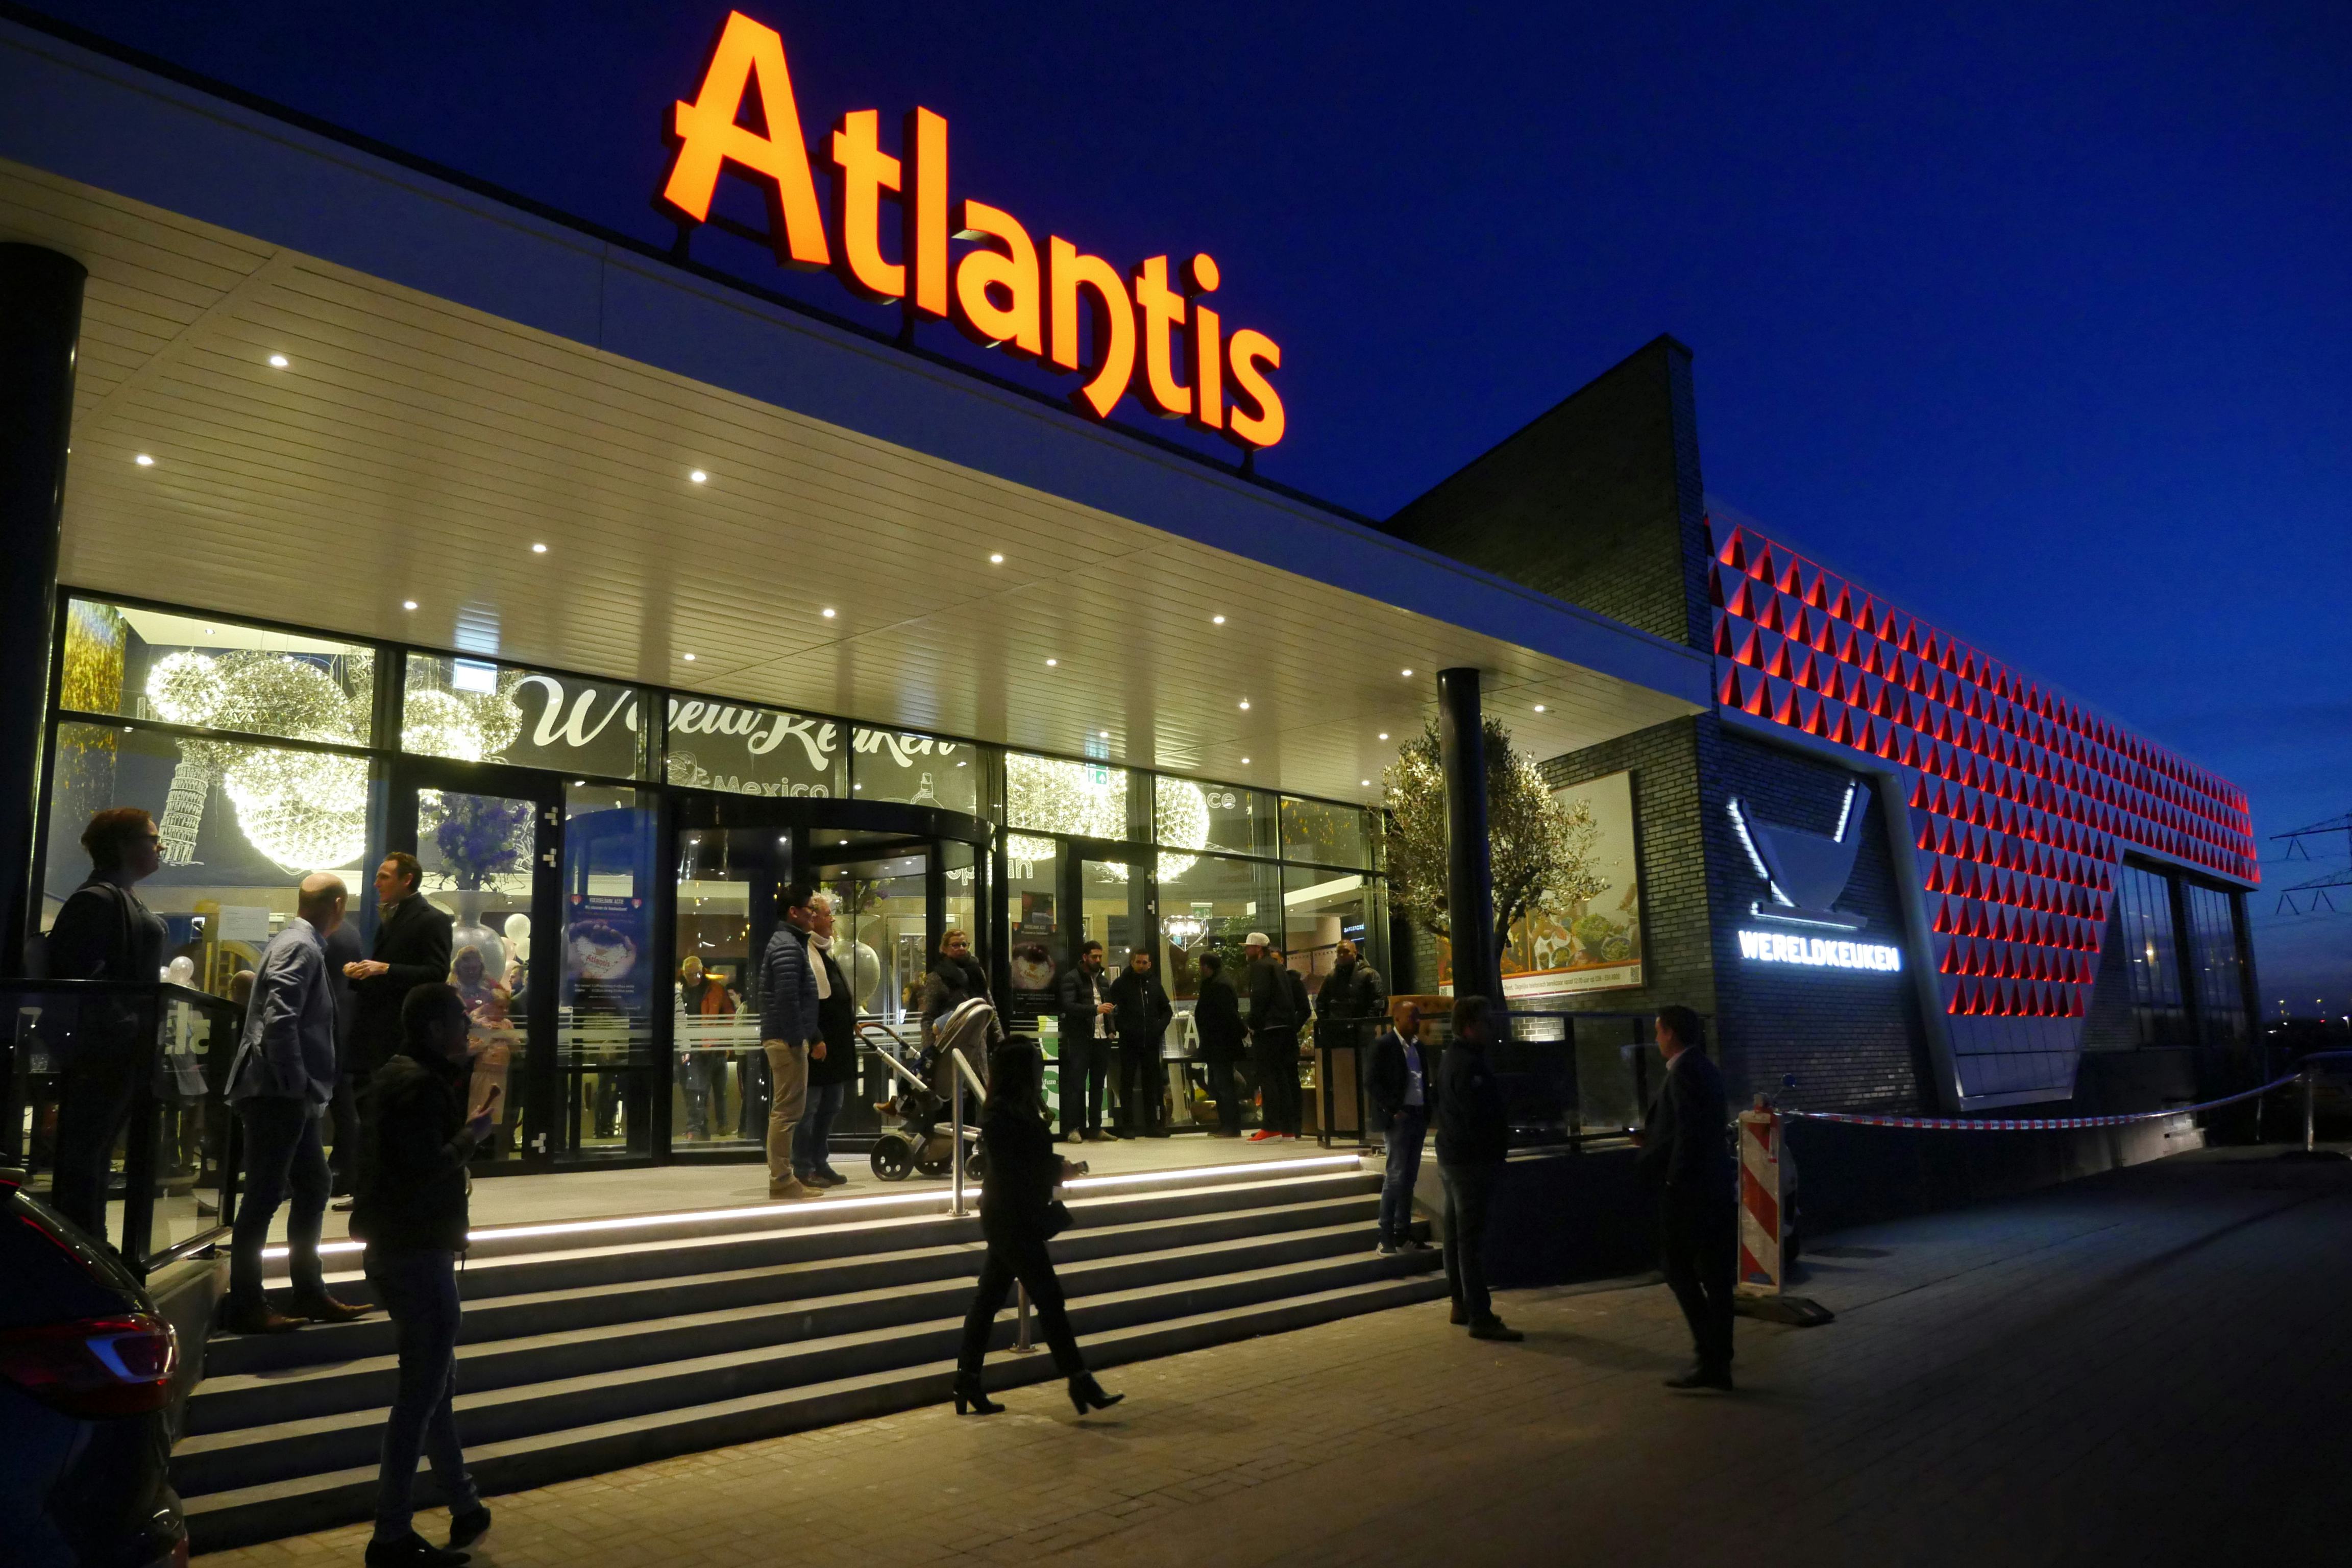 Wereldrestaurant Atlantis Almere opent met groot vuurwerk